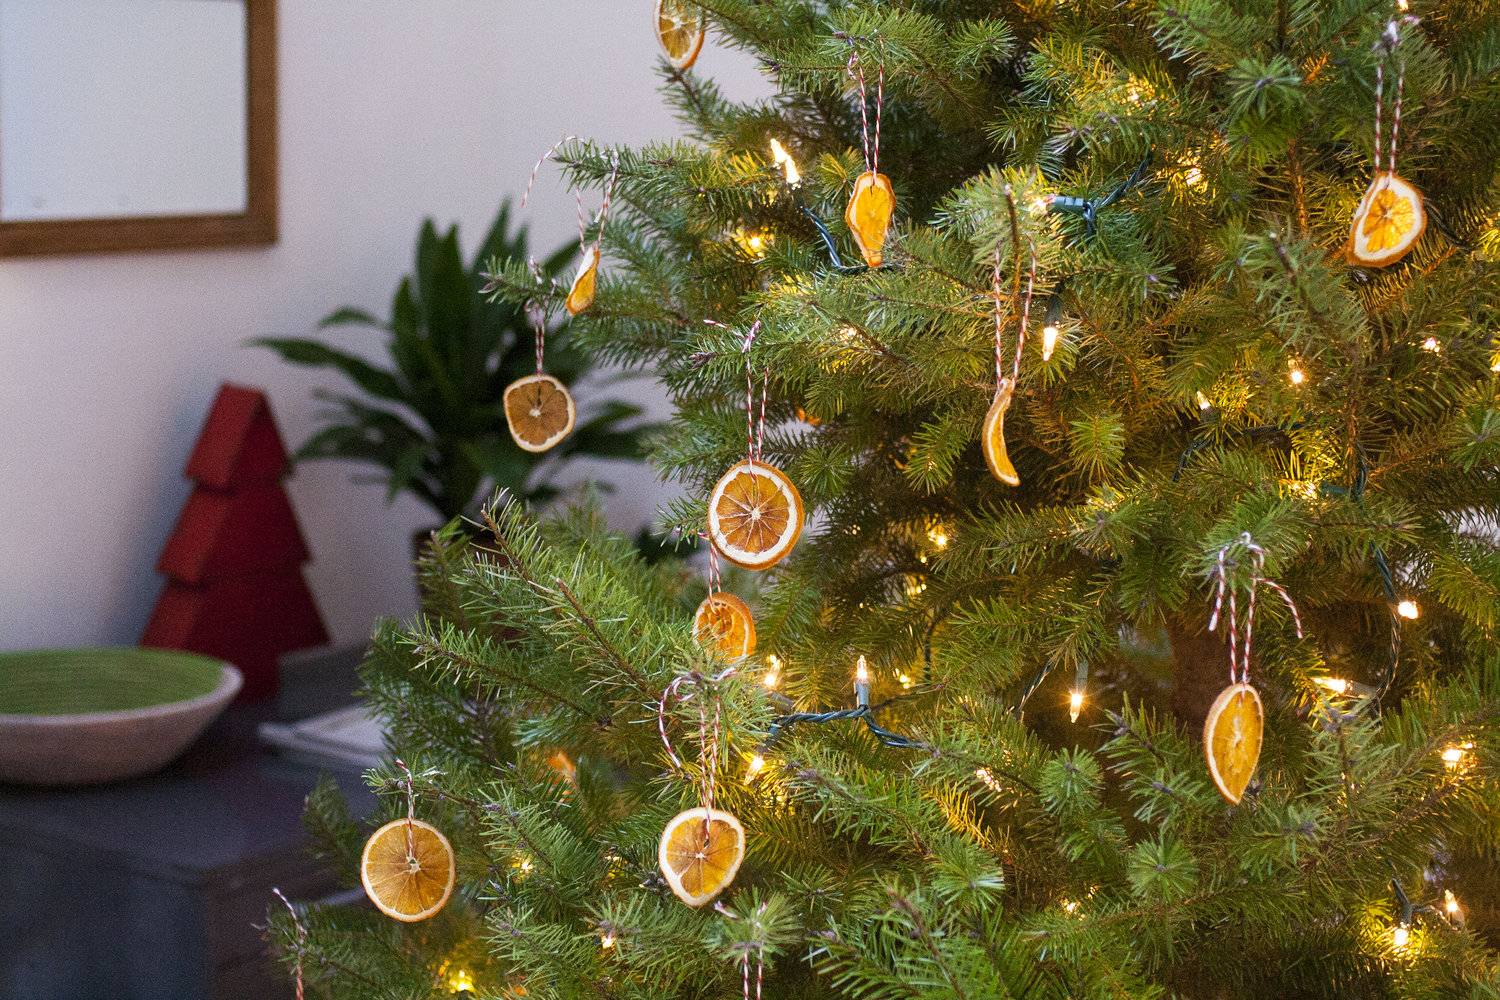 Homemade orange ornaments for your Christmas tree (from Maria Zizka)